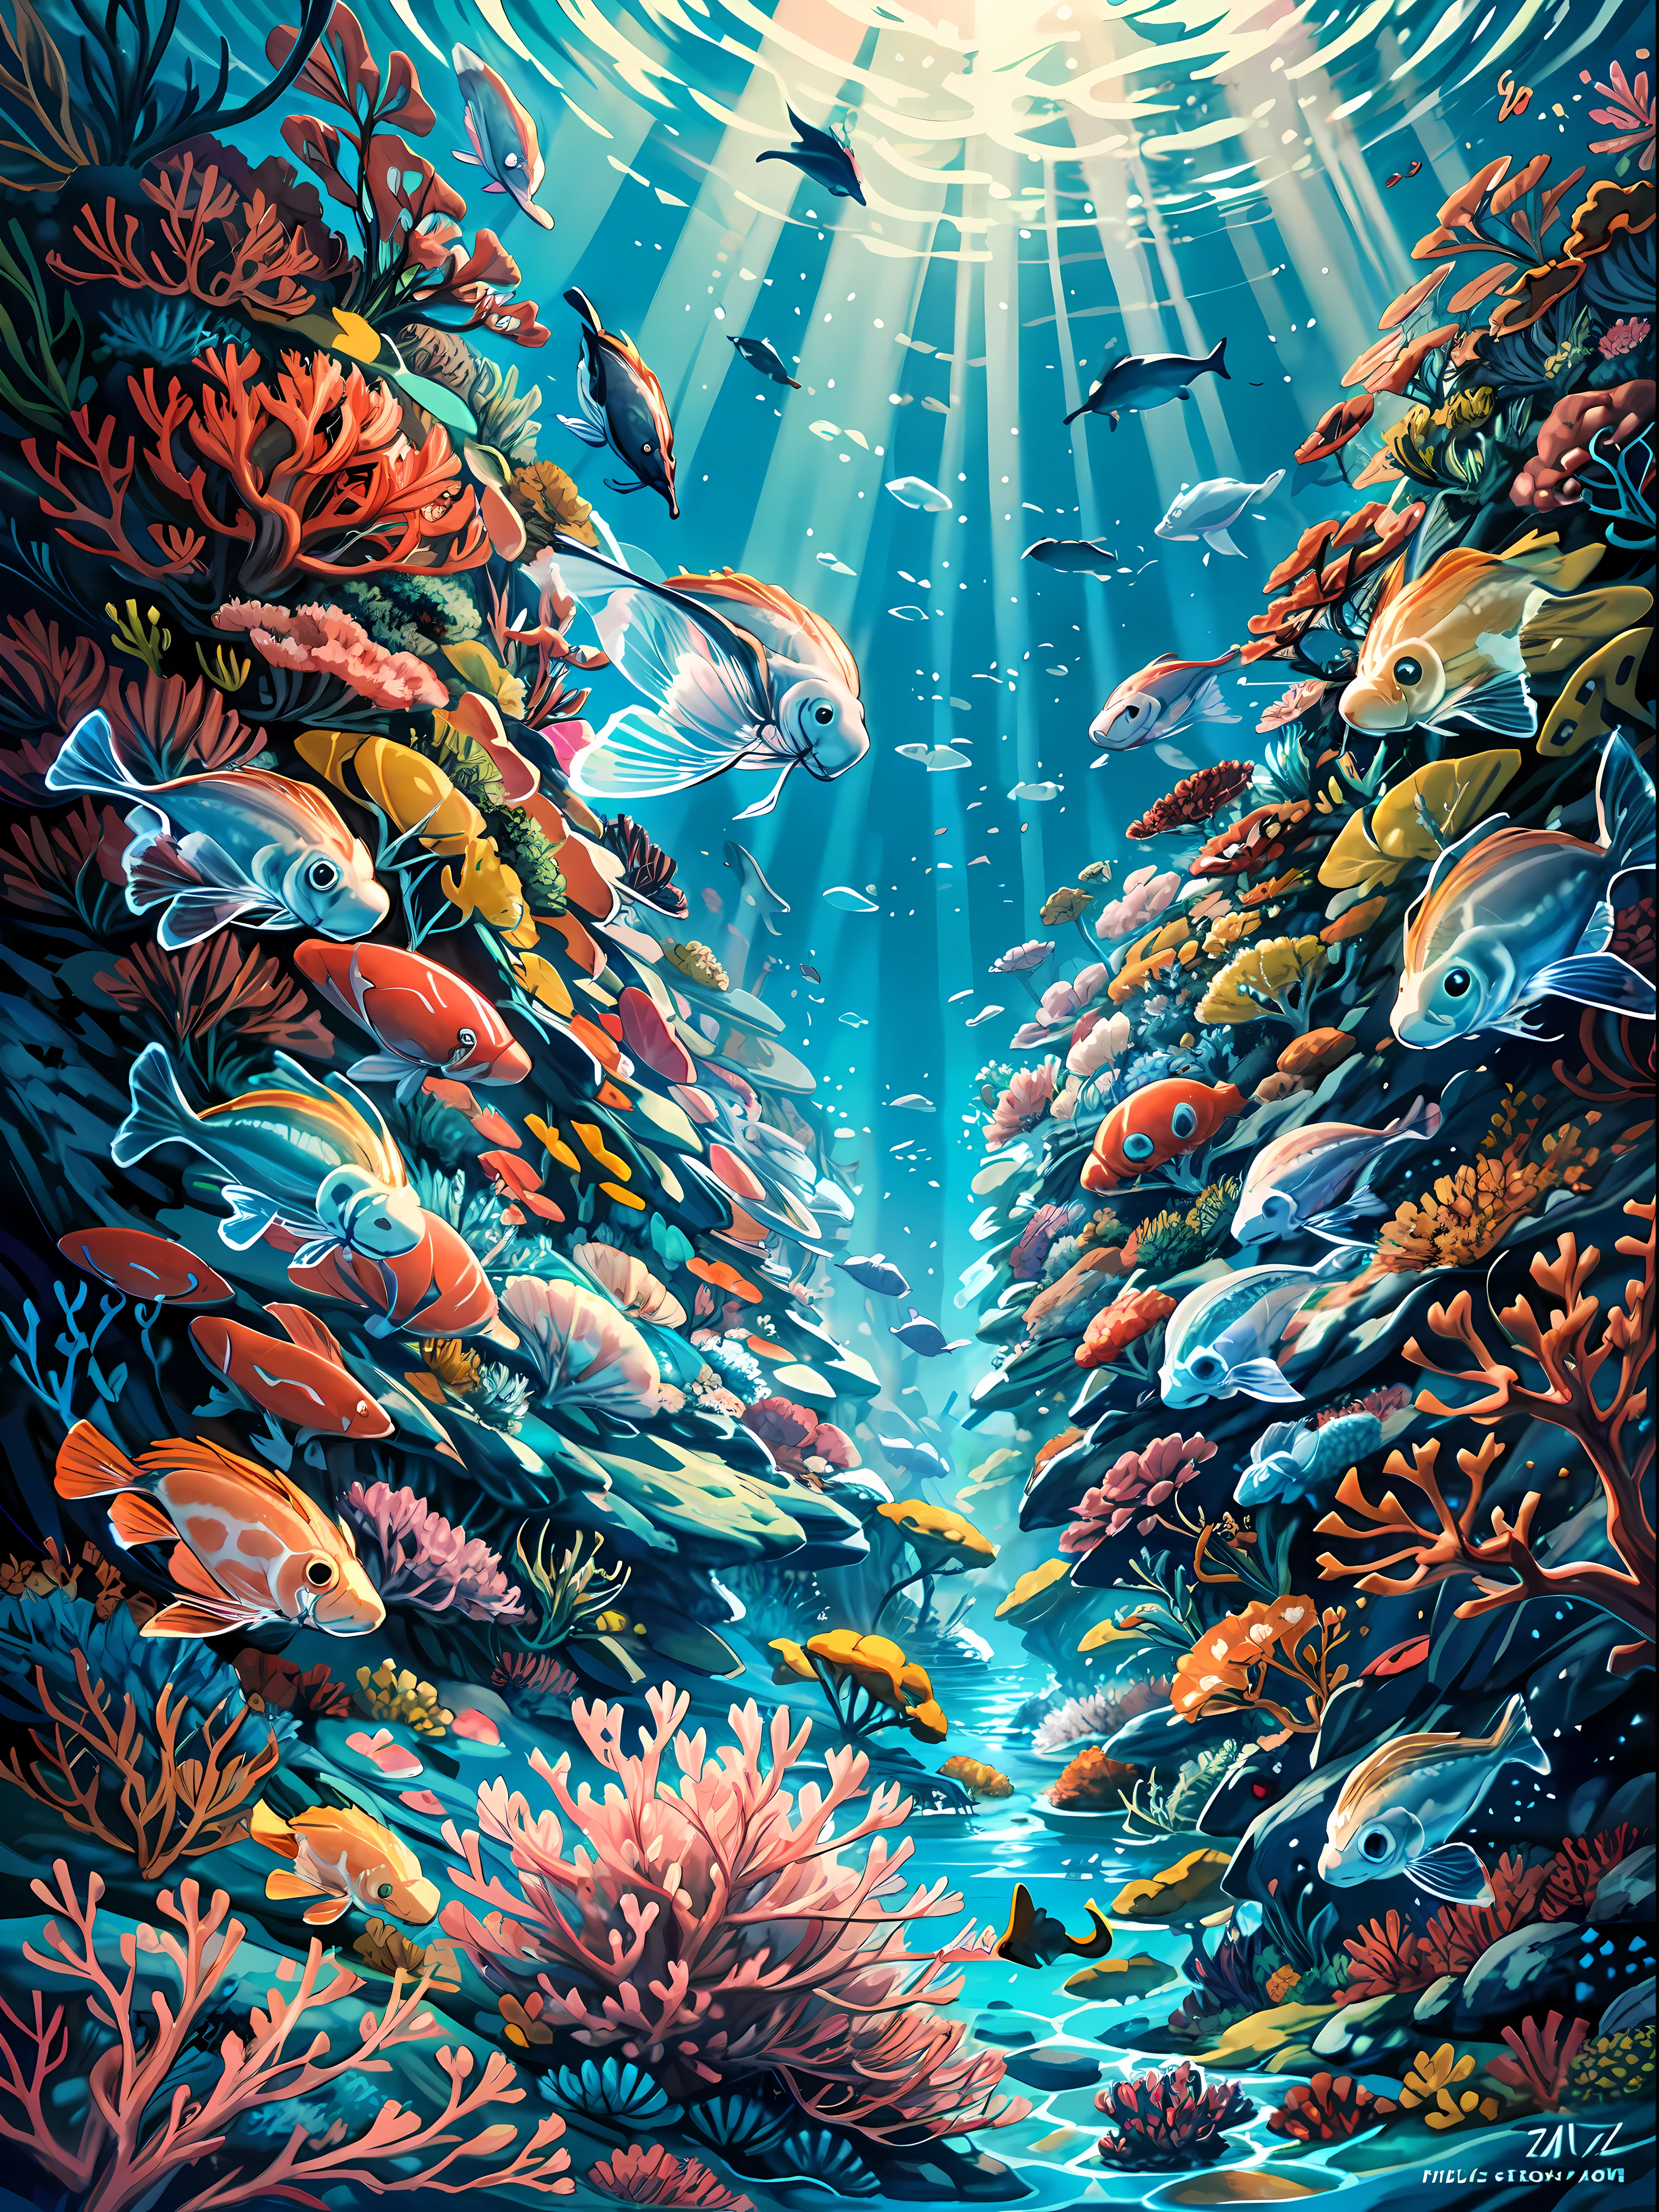 该图像捕捉到了超现实和超凡脱俗的水下风景，令人着迷的美丽, 图像的前景主要是巨大的, 色彩繽紛的珊瑚礁, 各种珊瑚种类营造出一幅色彩鲜艳的挂毯 BREAK 无数大大小小的鱼在珊瑚中穿梭, 增加图像的生命感和运动感. 是什么真正让这张图片与众不同, 然而, 是水母吗. 这些飘逸生物的捕捉方式使它们看起来几乎就像漂浮在空中一样, 长长的触手拖在身后, 仿佛它们是一群精致的芭蕾舞演员 BREAK 水母也从内部被照亮, 创造出一种超凡脱俗的光芒，似乎辐射到整个图像. 影像的整體效果是一個夢幻而超現實的海底世界, 那里的自然之美既令人难以忘怀的宁静又壮丽.